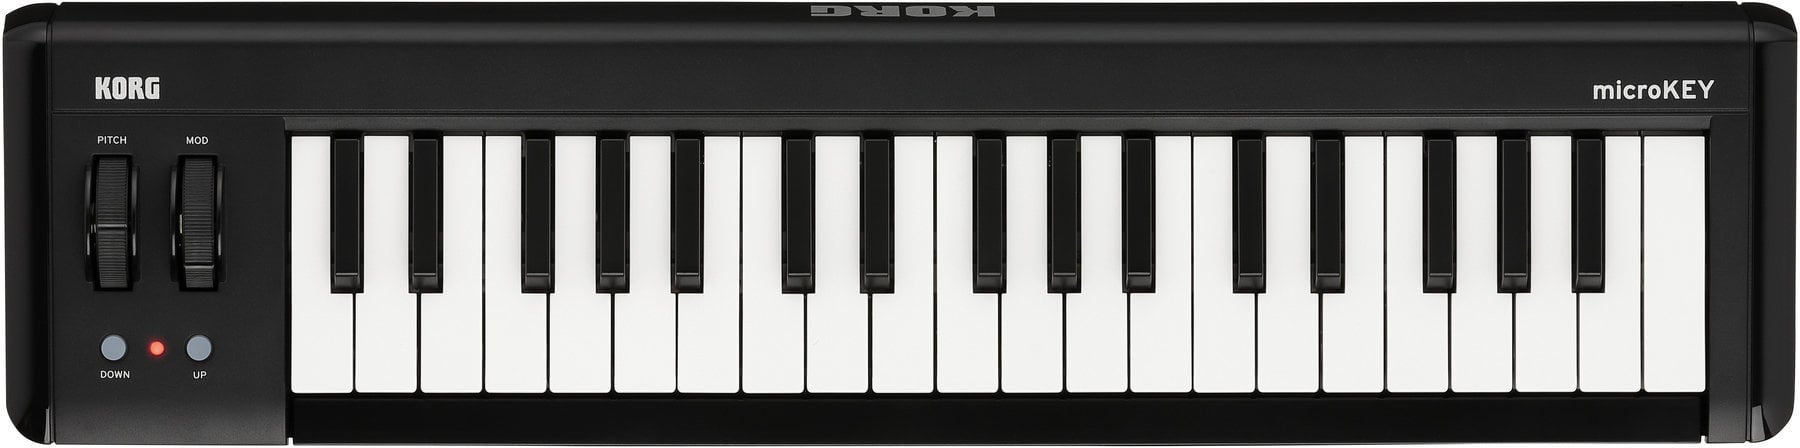 MIDI keyboard Korg MicroKEY2-37